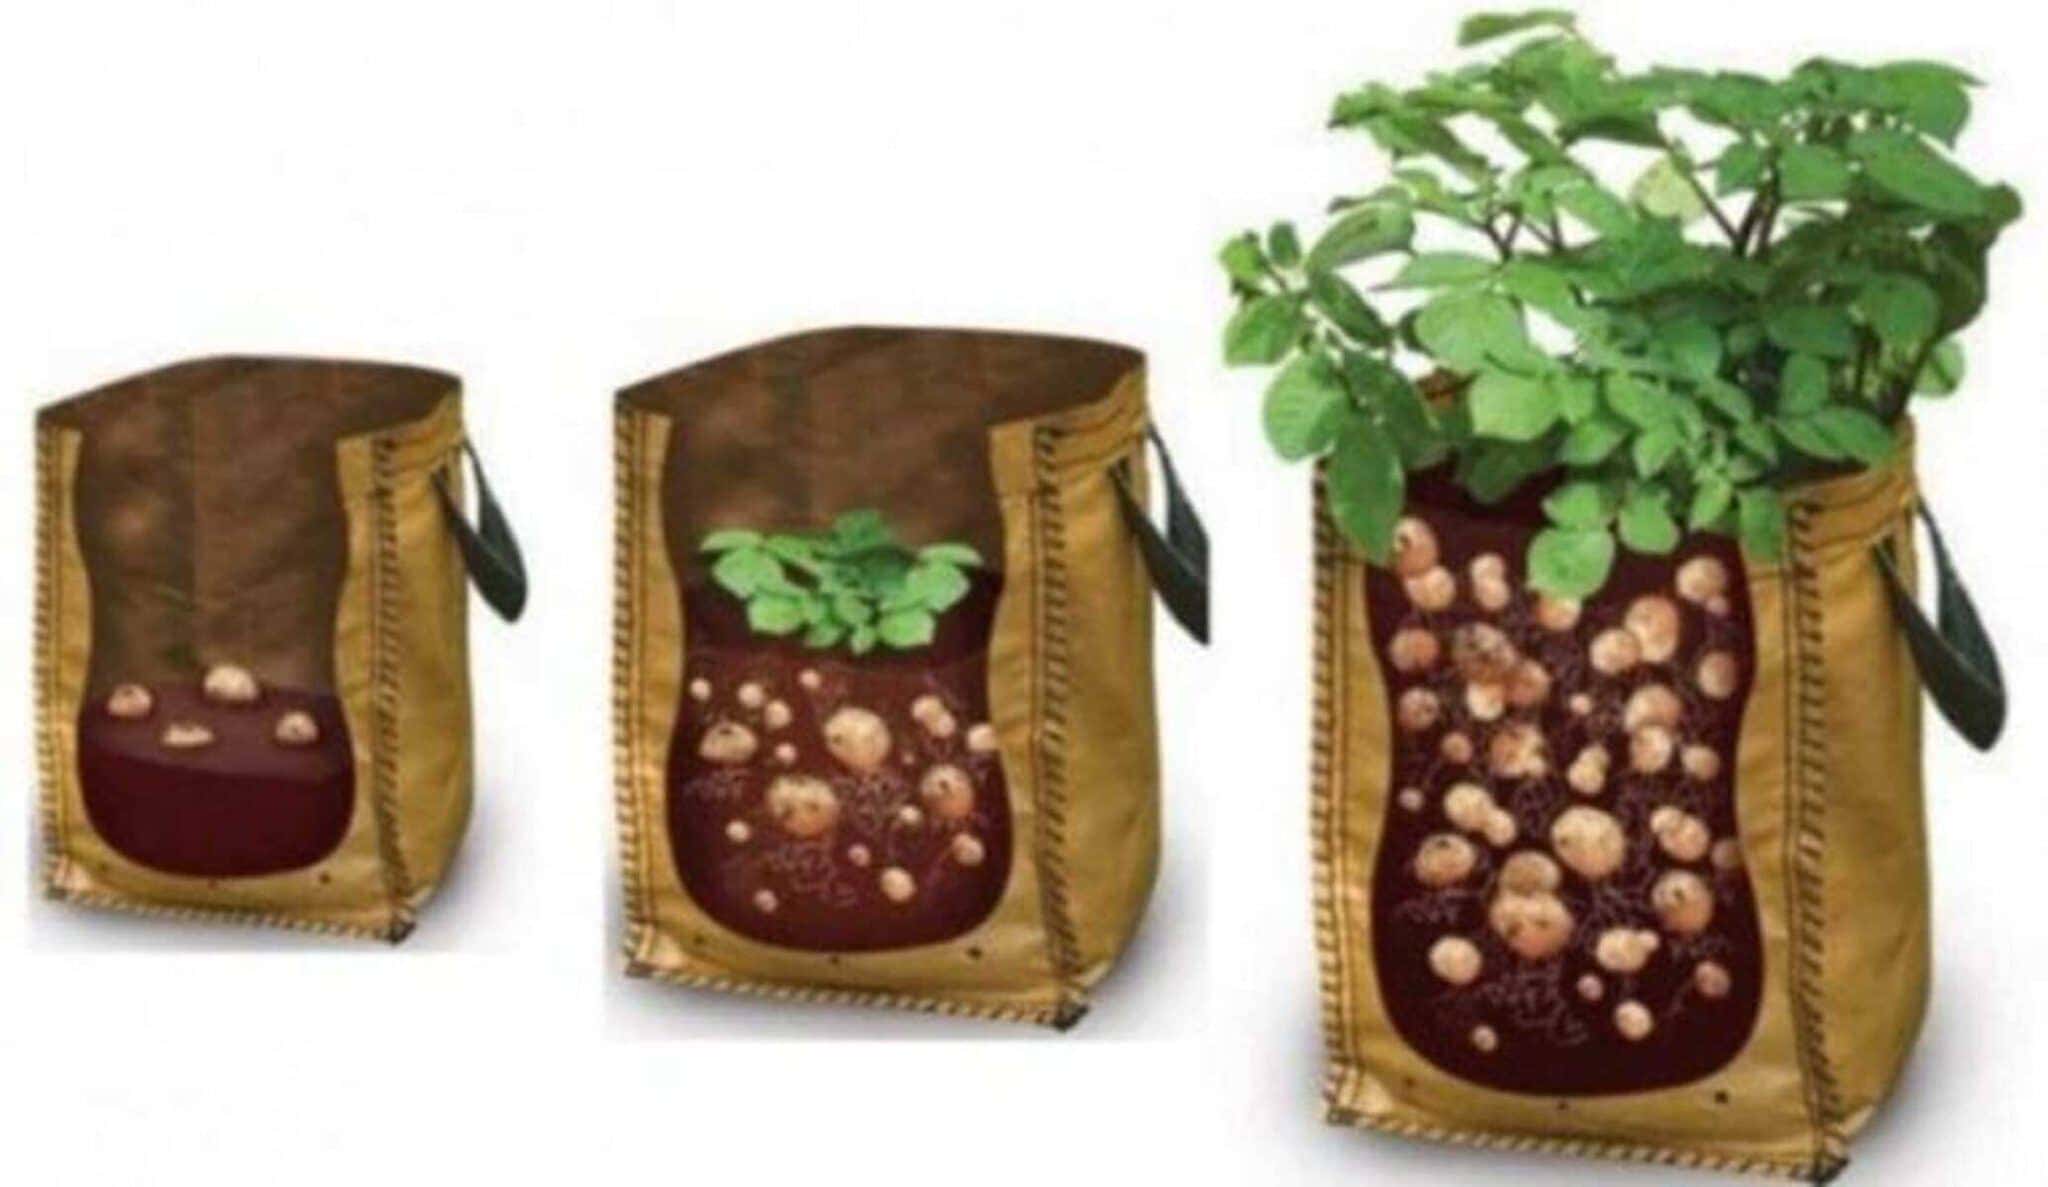 BAGS 1 1 2048x1187 1 מדריך לגידול תפוחי אדמה